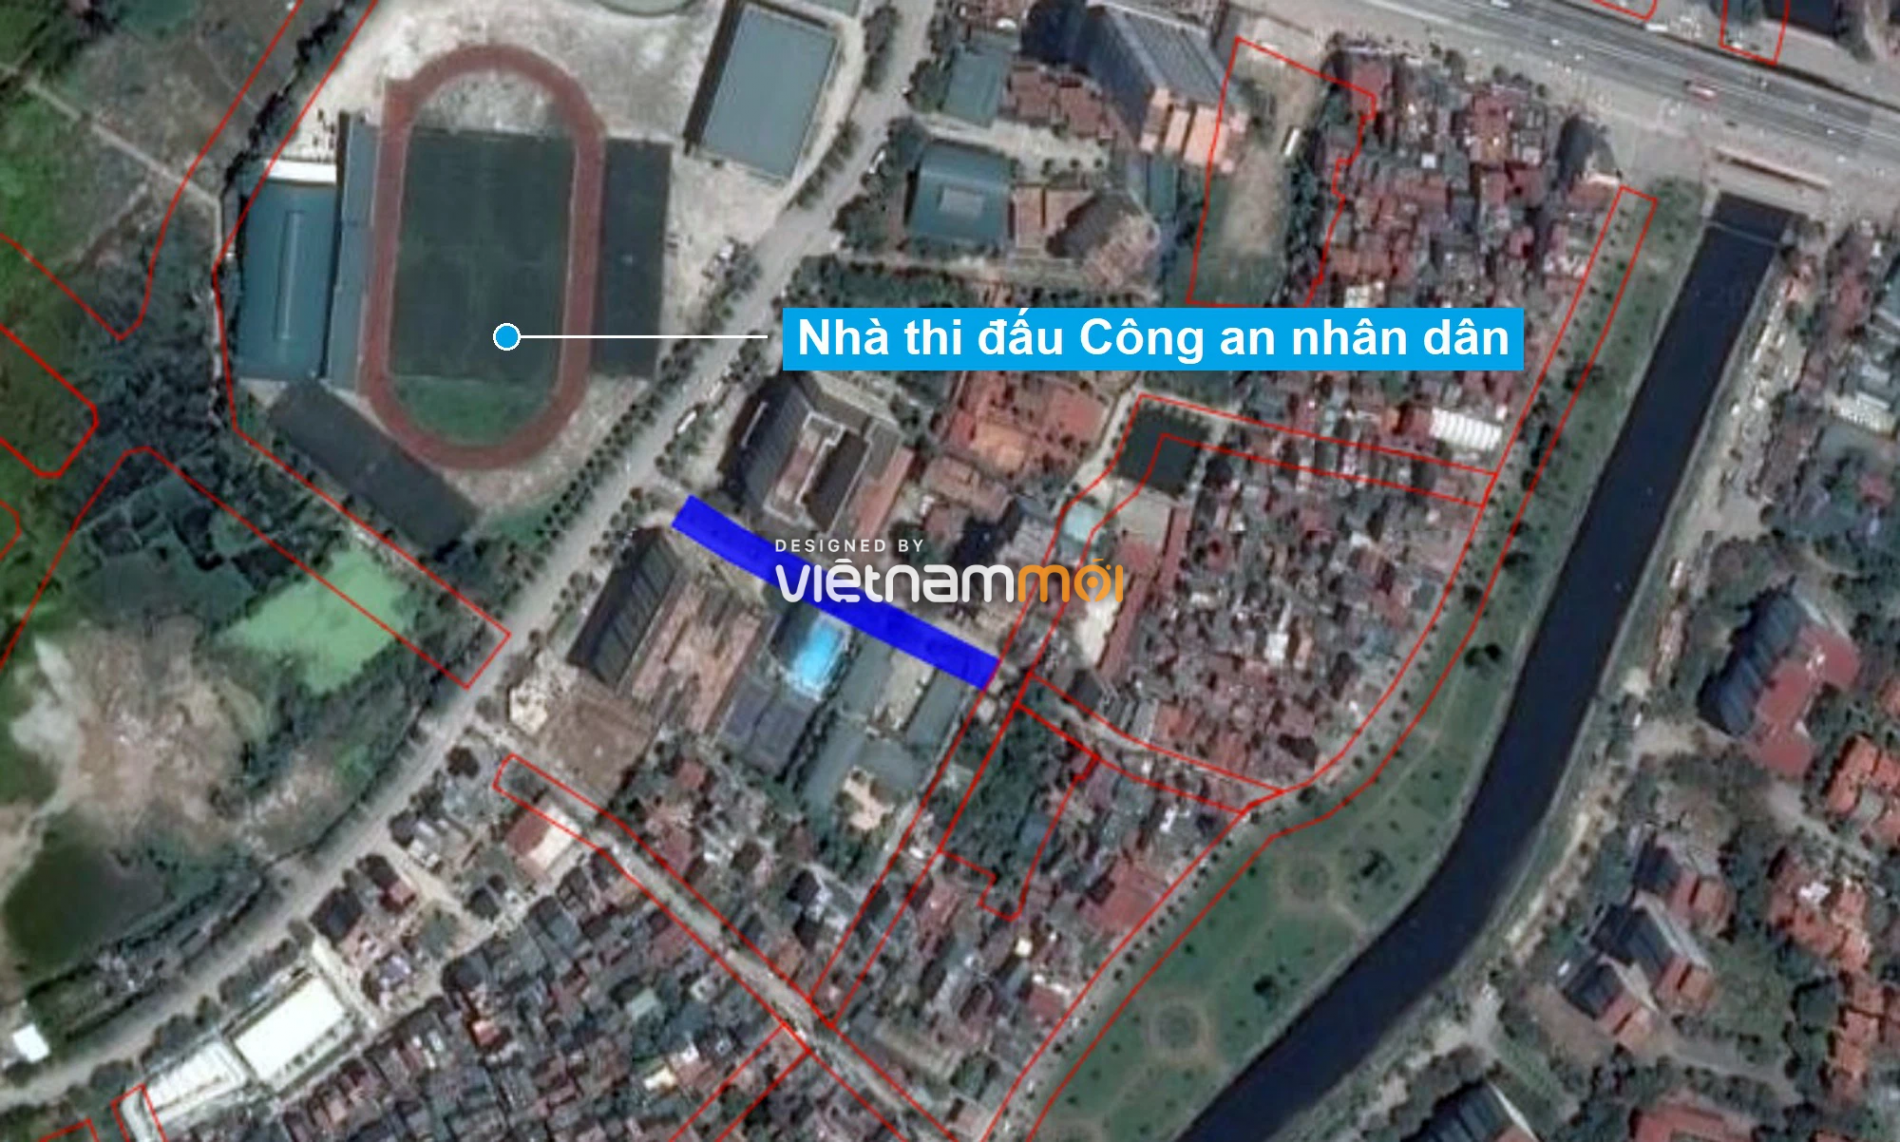 Những khu đất sắp thu hồi để mở đường ở xã Thanh Liệt, Thanh Trì, Hà Nội (phần 3) - Ảnh 14.